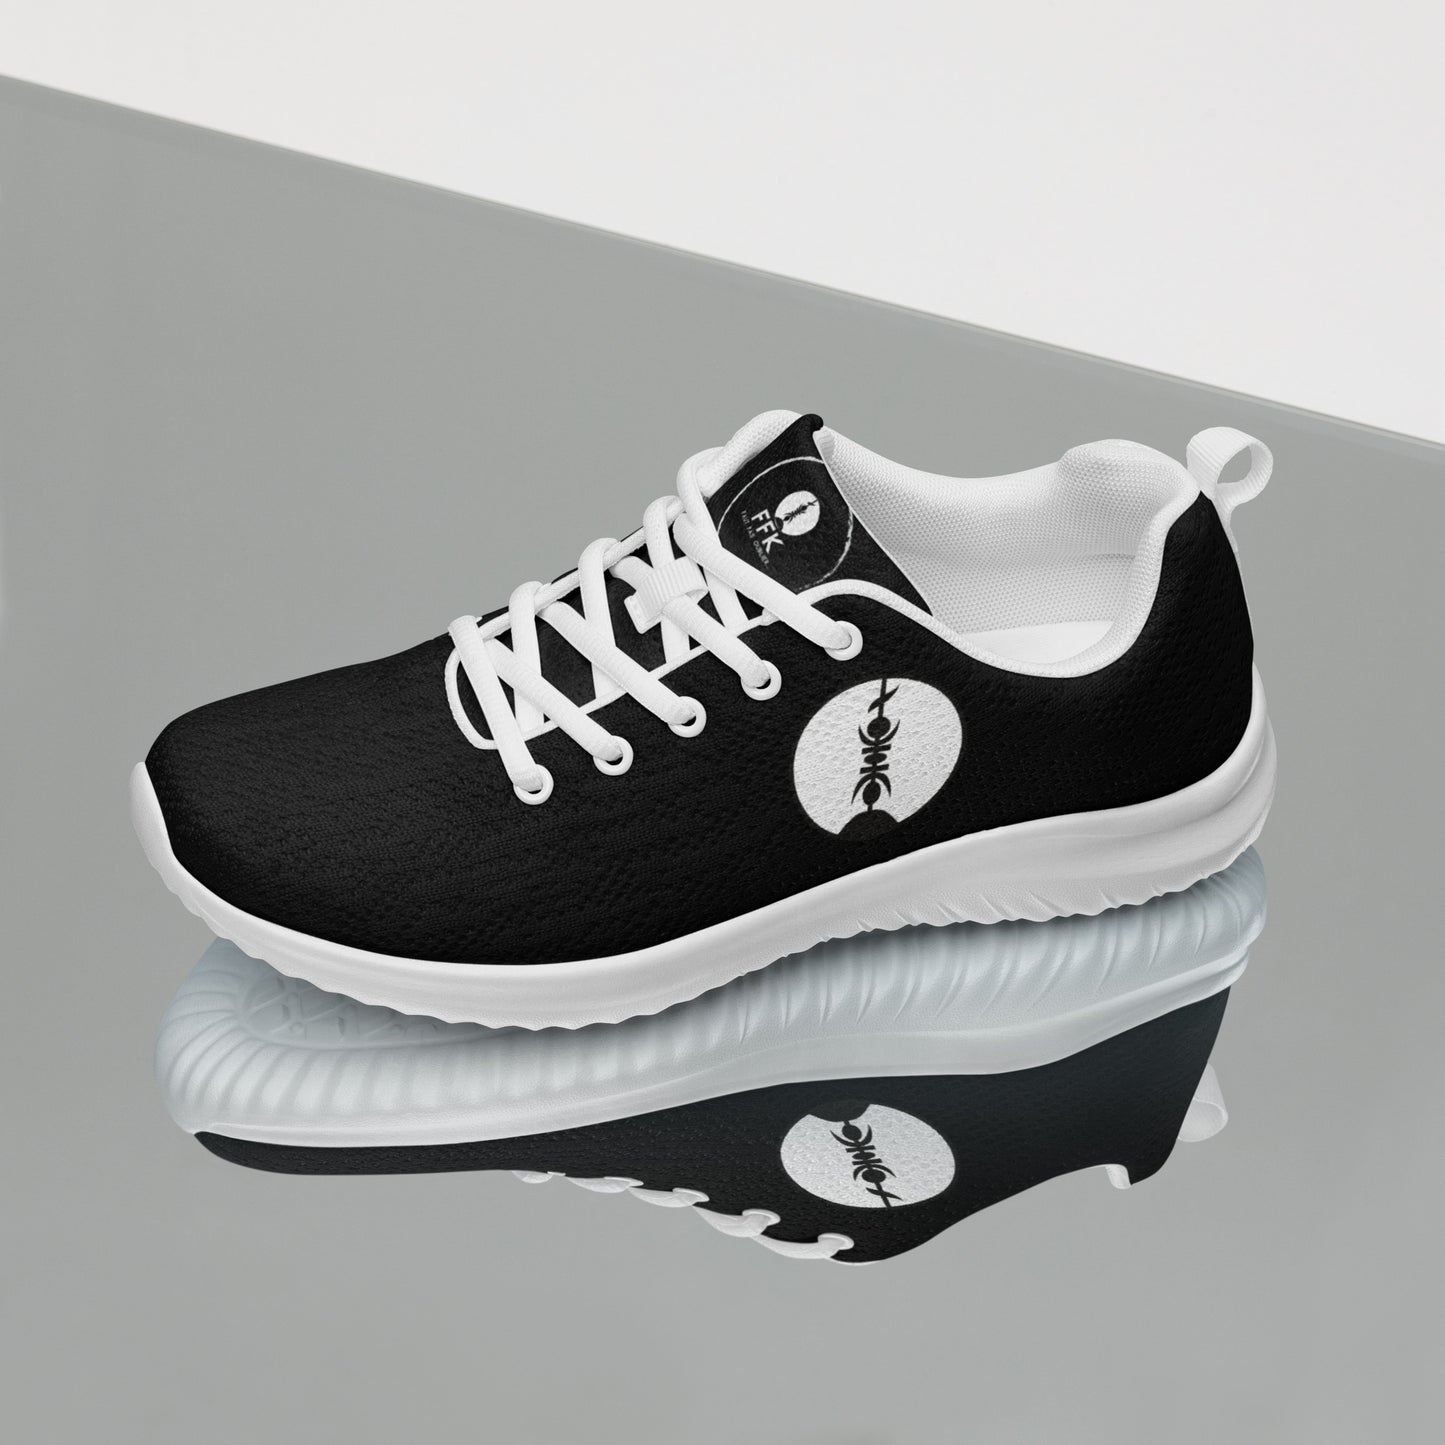 Chaussures de sport pour femme FFK - black